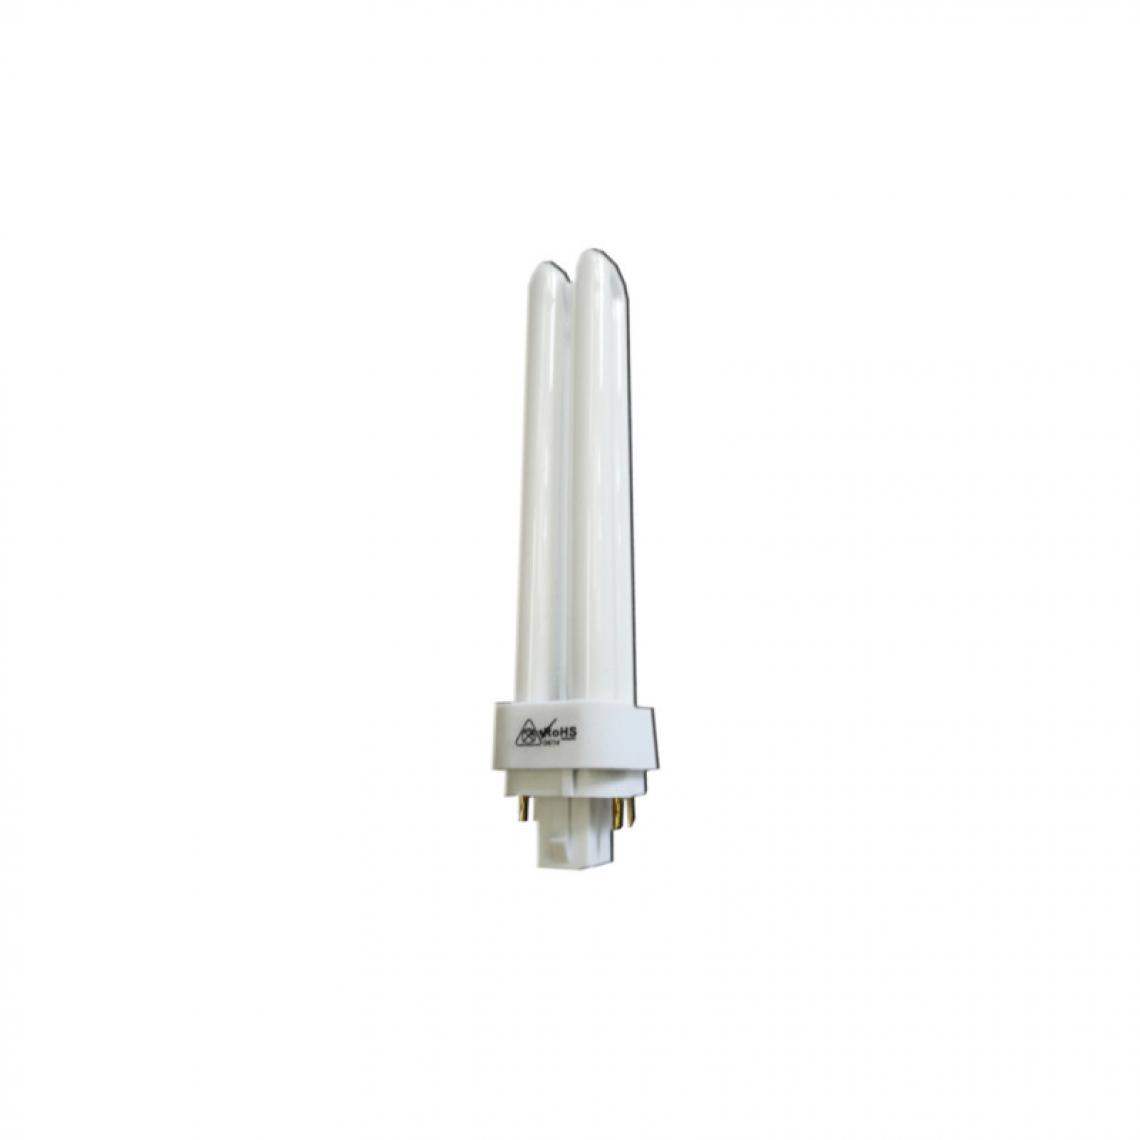 Edm - Ampoule EDM basse consommation - 1700lm - 26W - 4000K - G24 - Ampoules LED